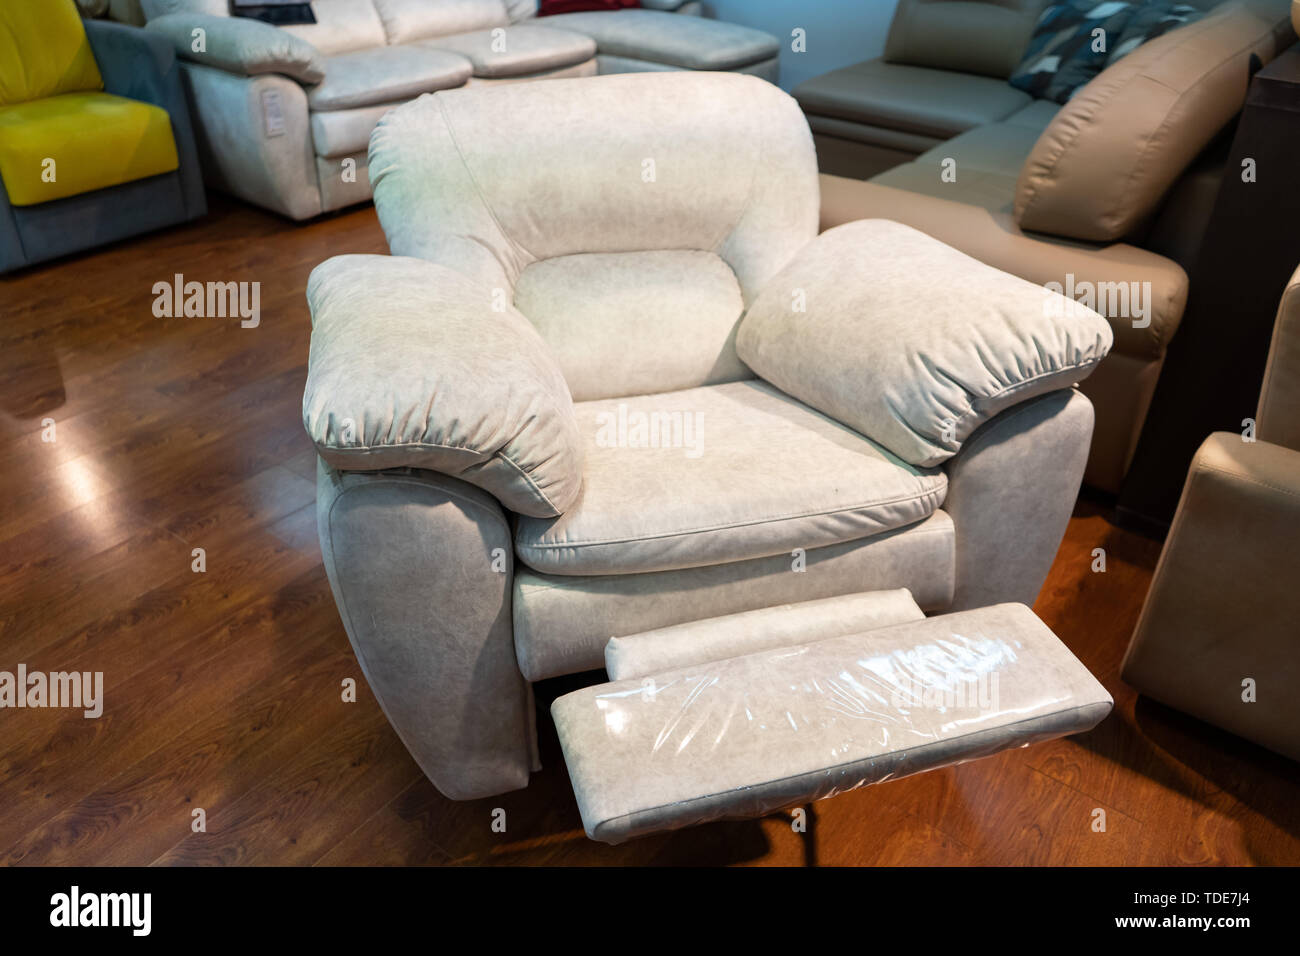 Nouvelle chaise en cuir dans le magasin. Canapés et chaises sont exposées dans le magasin de meubles. Vente Banque D'Images